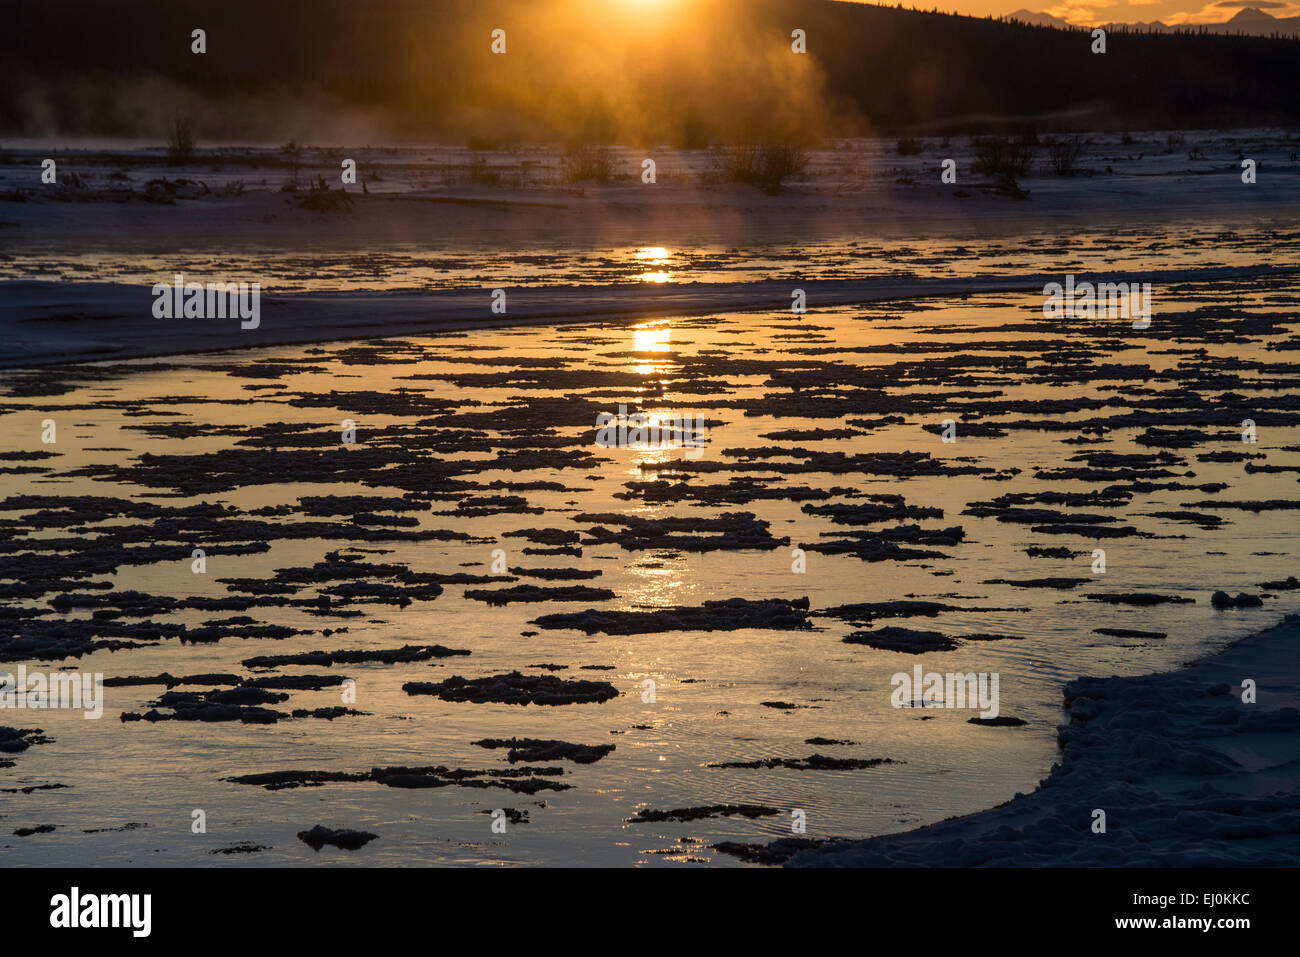 frieren, Einfrieren, Tanana, River, Alaska, USA, USA, Amerika, Landschaft, Eis, Sonnenuntergang, winter Stockfoto